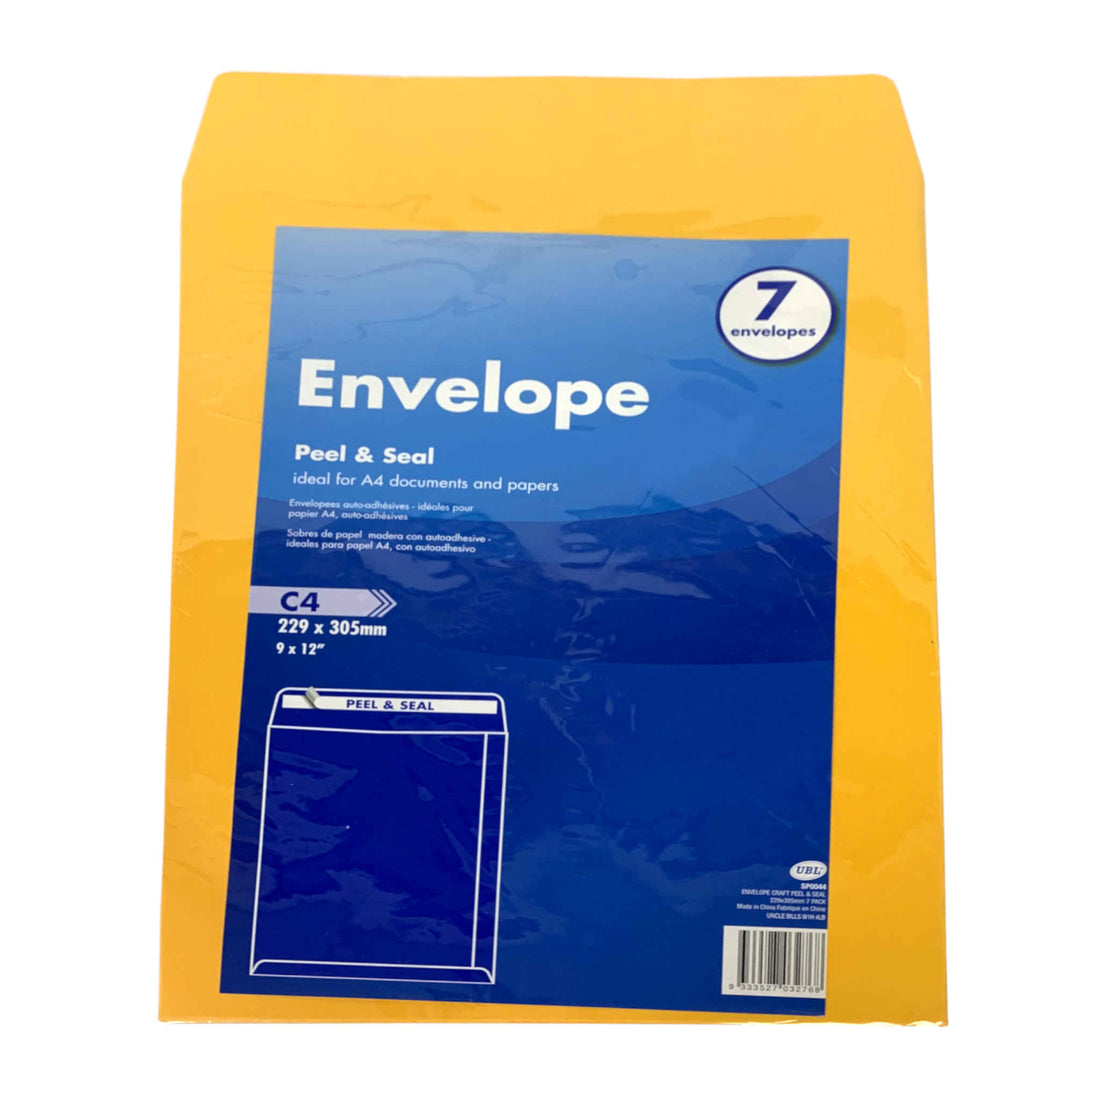 Peel/SL Envelope | 229 x 305mm | 7 Pack